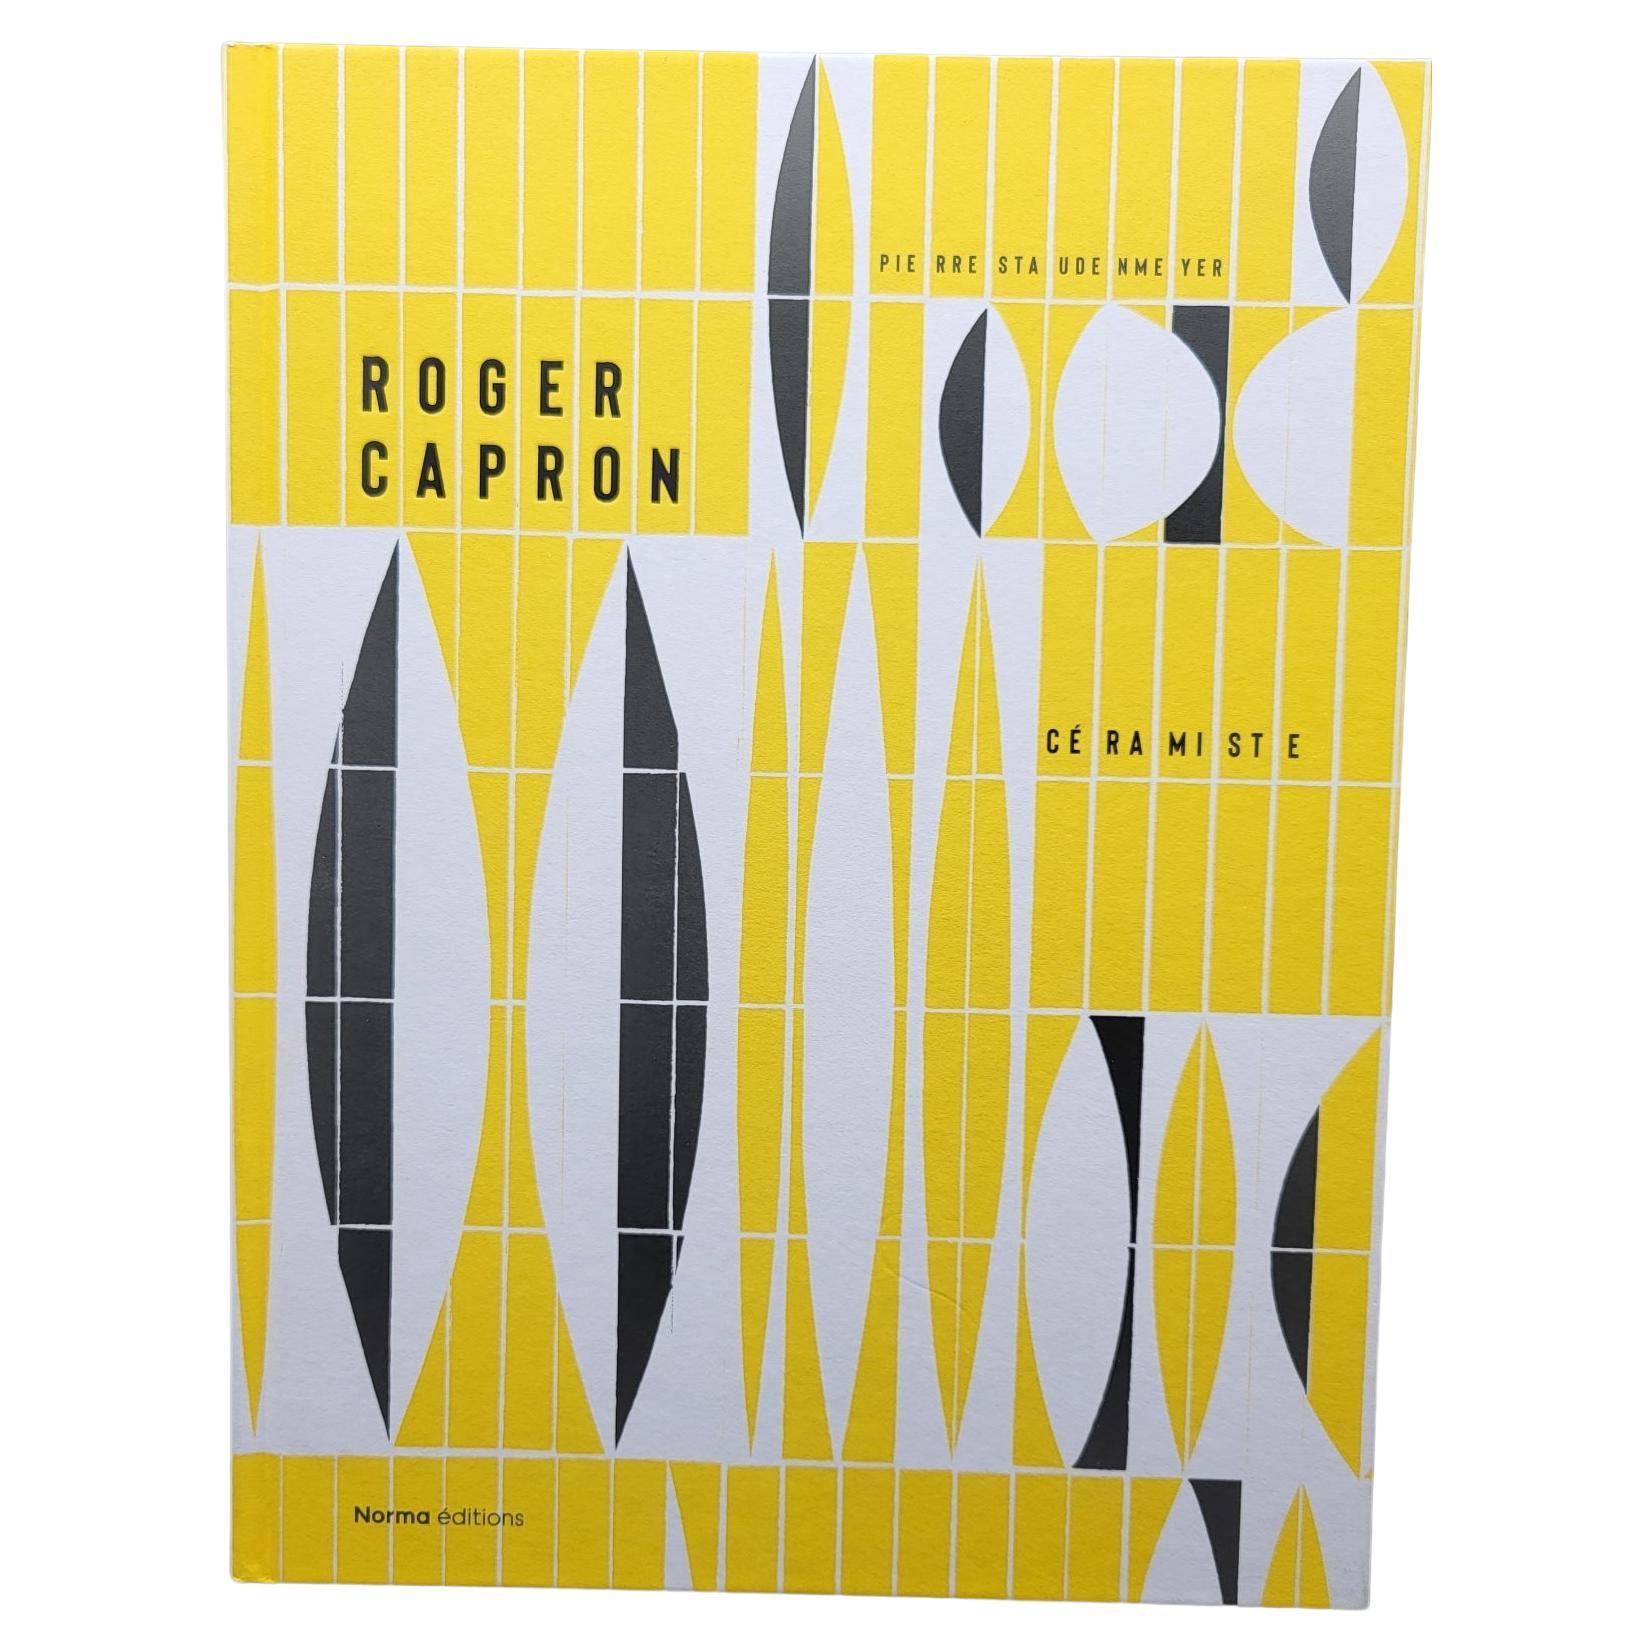 Cette table basse est présenté dans livre ROGER CAPRON page 146

Roger Capron (1922 -2006) remporte en 1970 le Grand Prix International de la Céramique. Céramiste surdoué et visionnaire, Il contribua à l'âge d'or de la céramique avec Picasso,